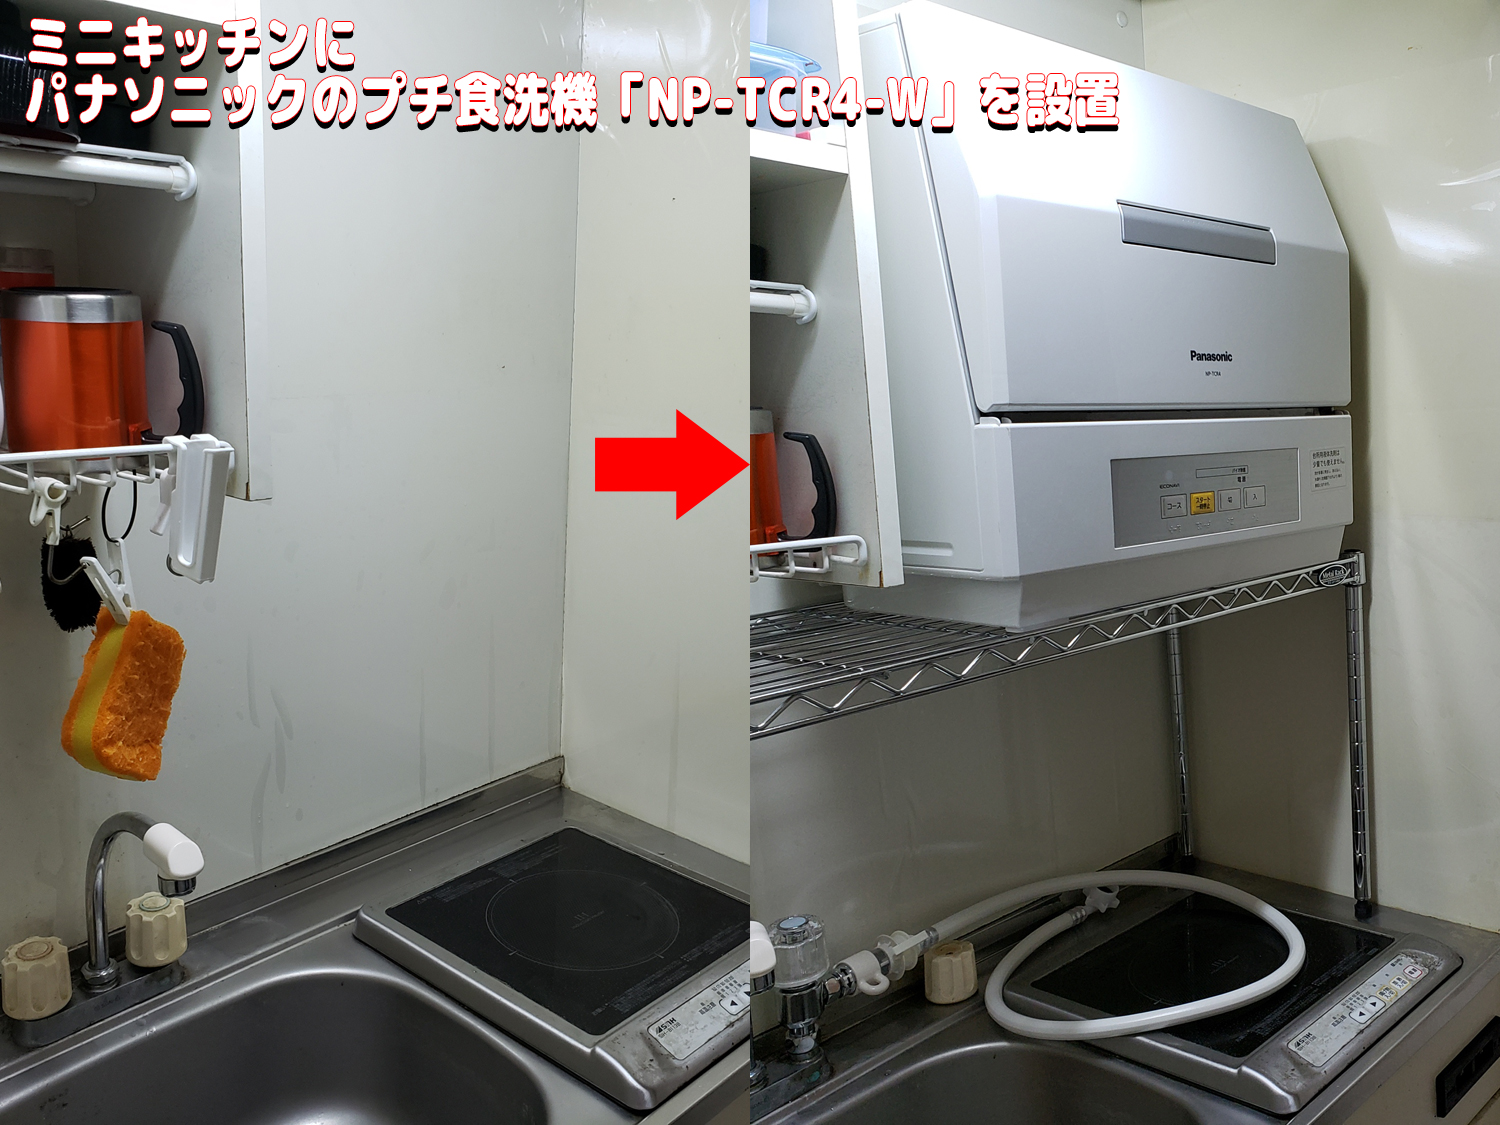 パナソニックのプチ食洗機「NP-TCR4-W」をミニキッチンに設置した流れ | アダログ